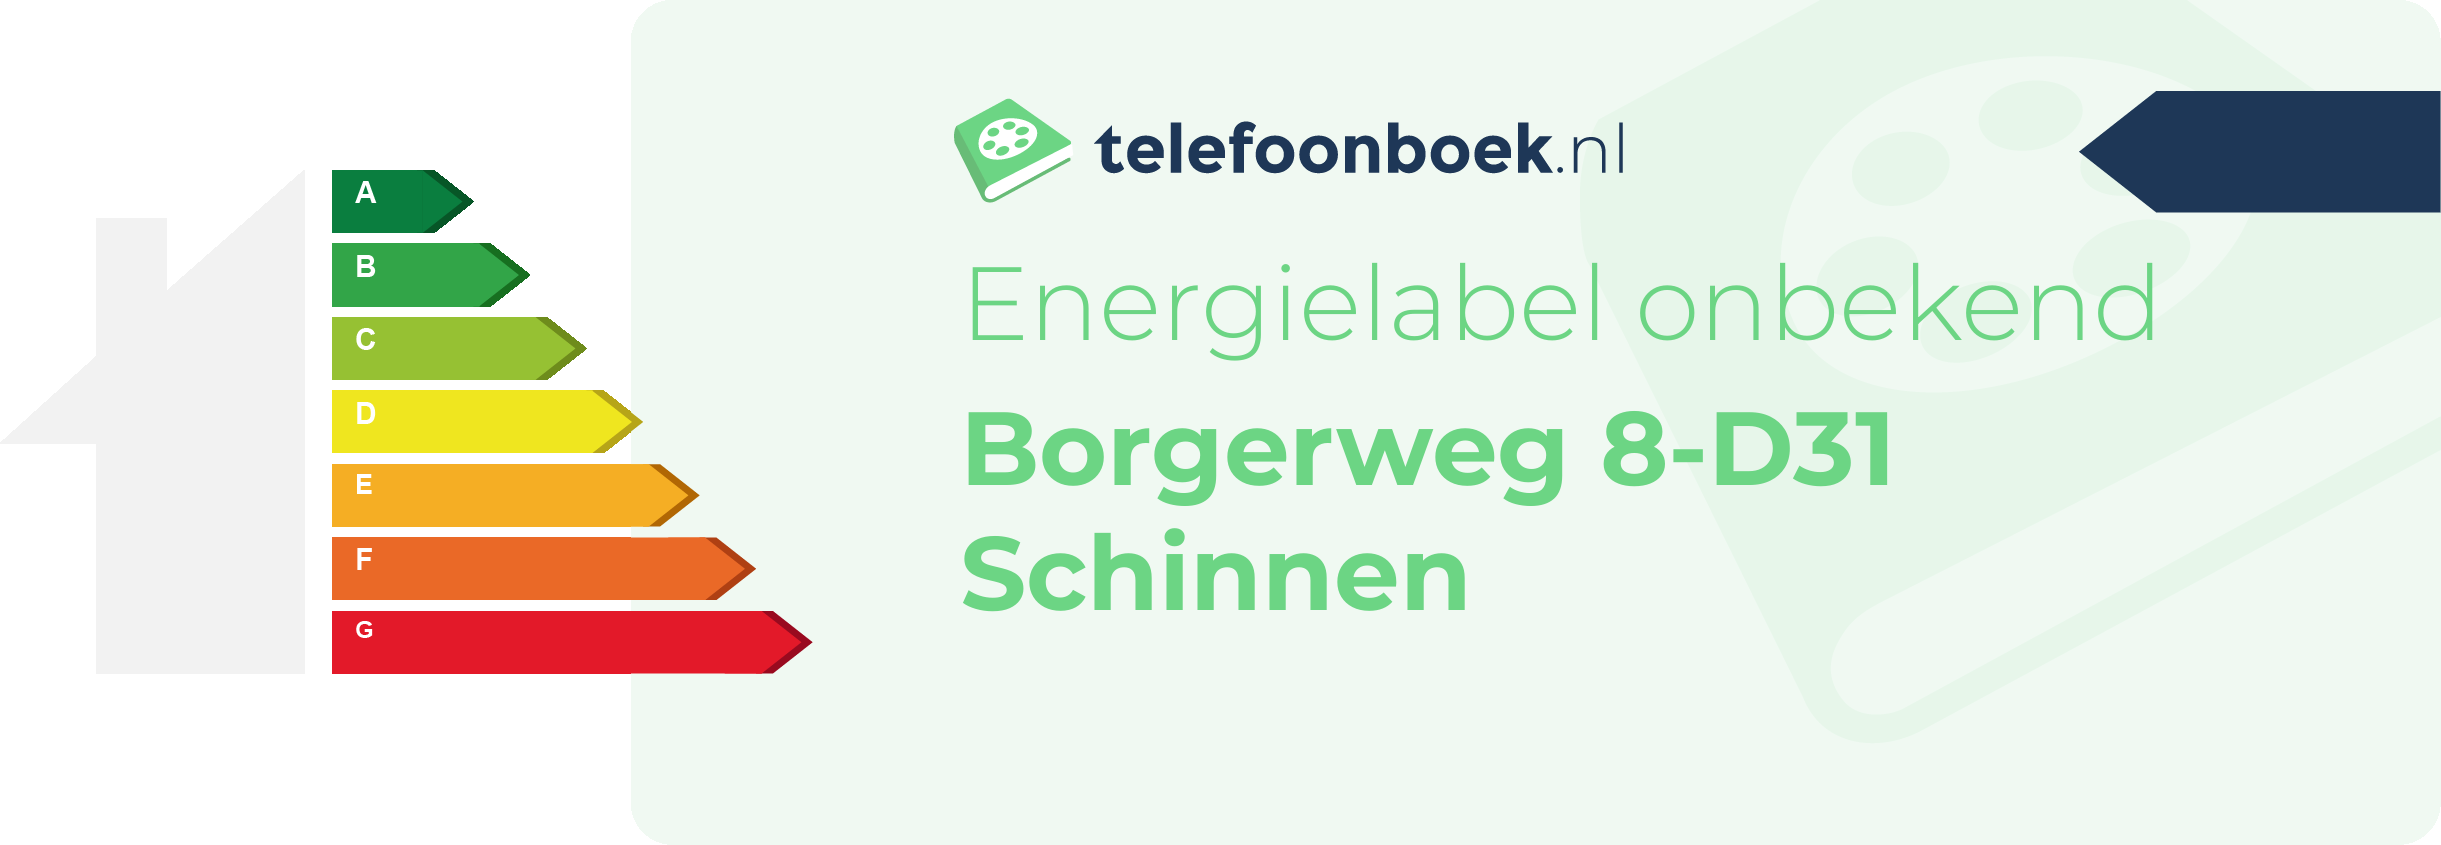 Energielabel Borgerweg 8-D31 Schinnen